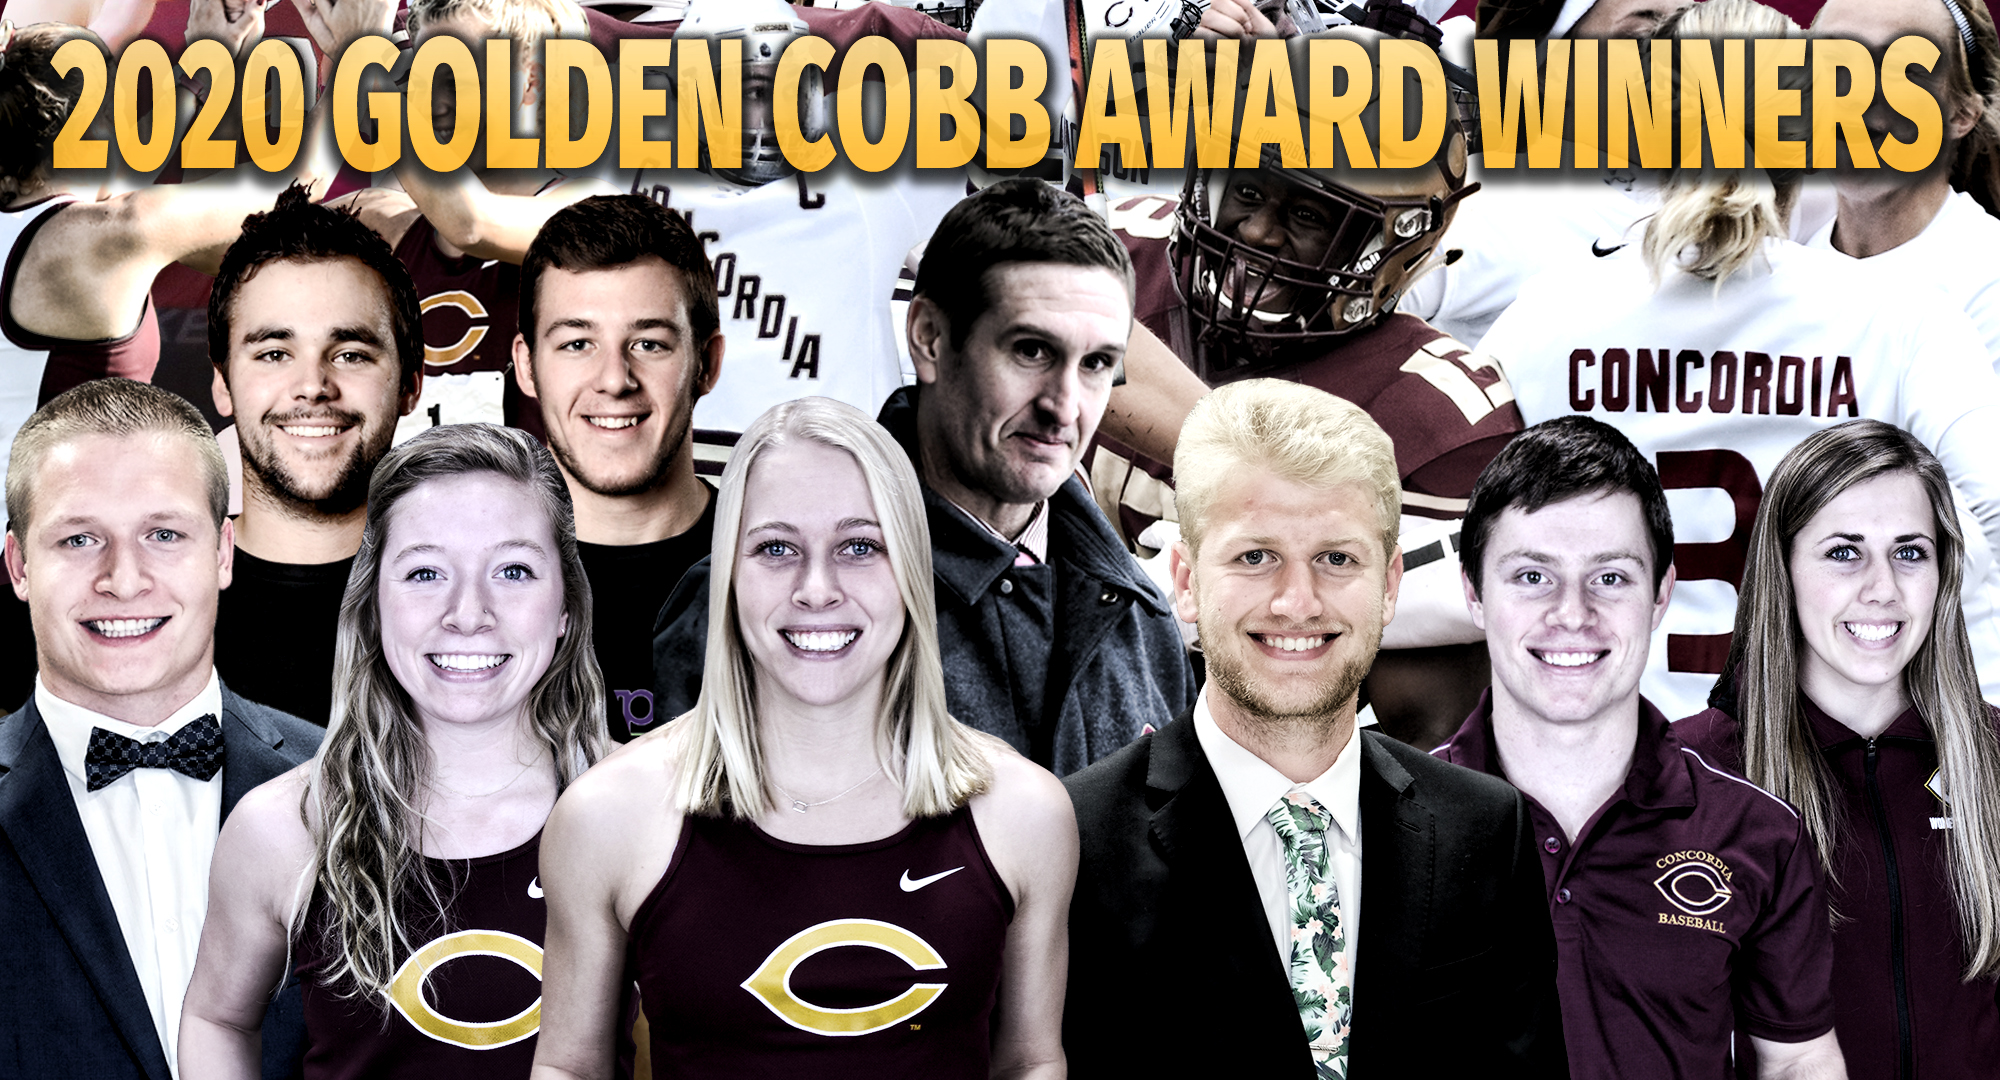 The 2020 Golden Cobb Award Winners